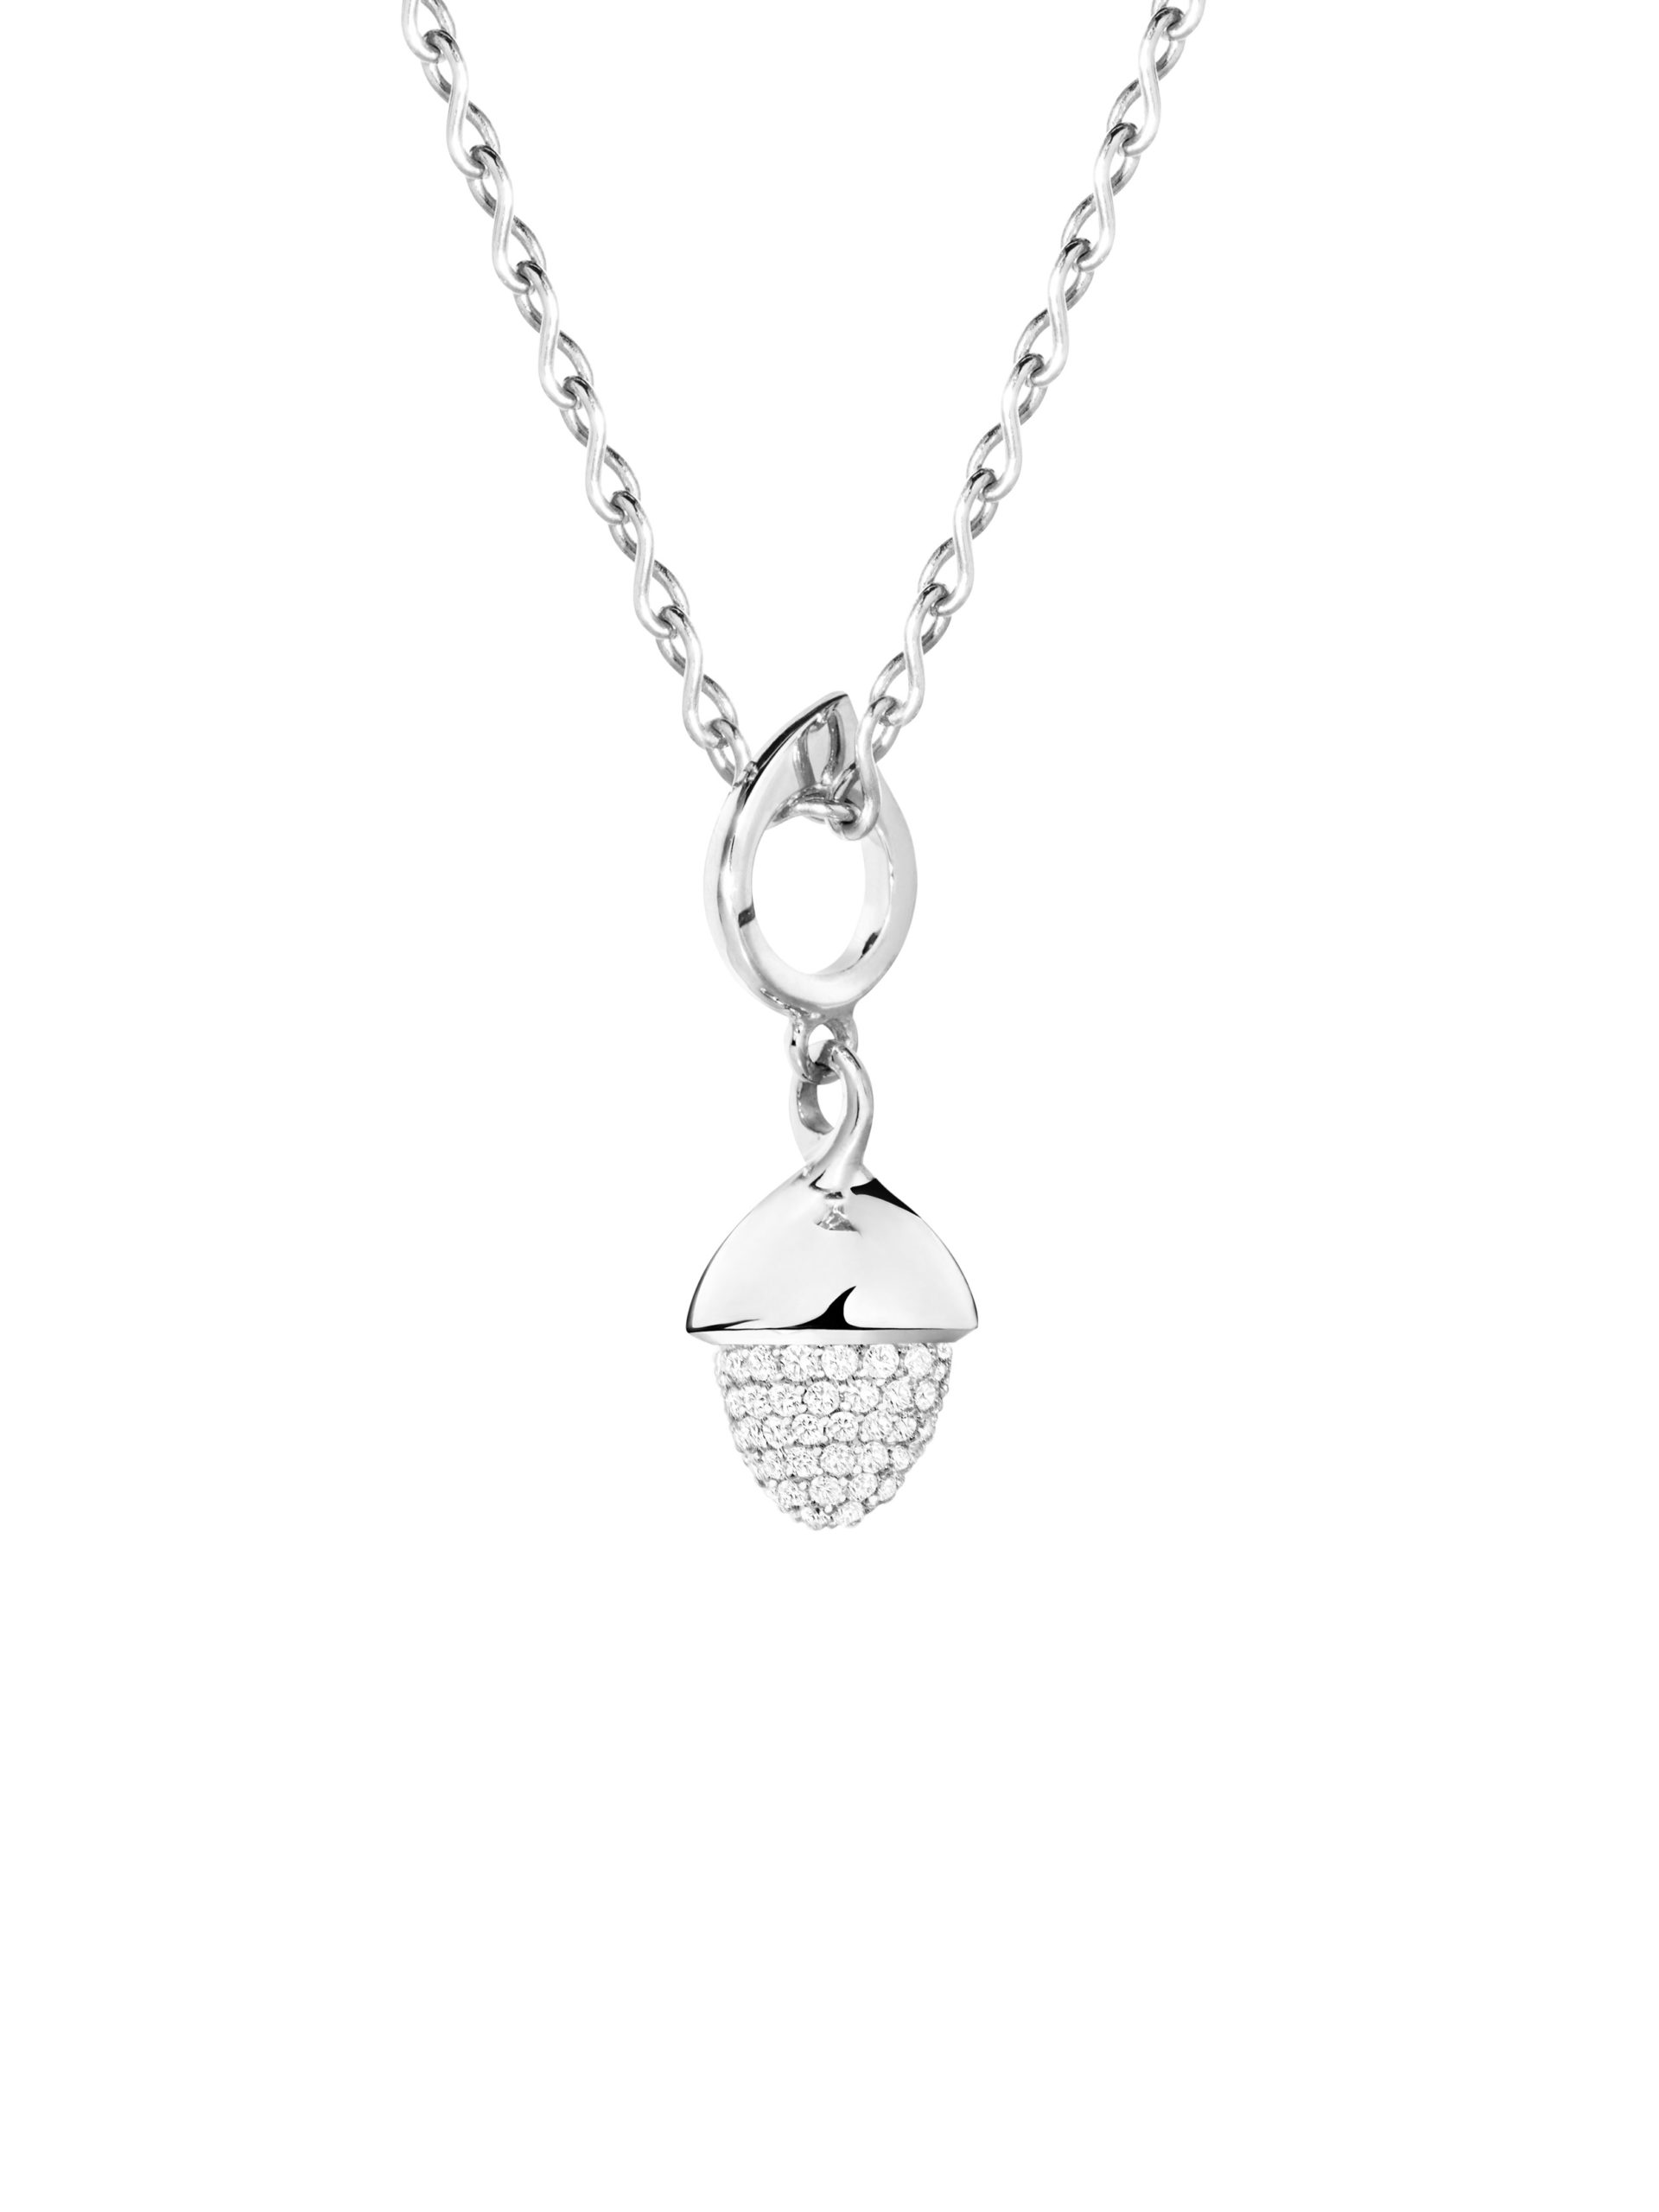 MIKADO FLAMENCO pendant with Diamond pavéMIKADO FLAMENCO Anhänger mit Diamantpavé